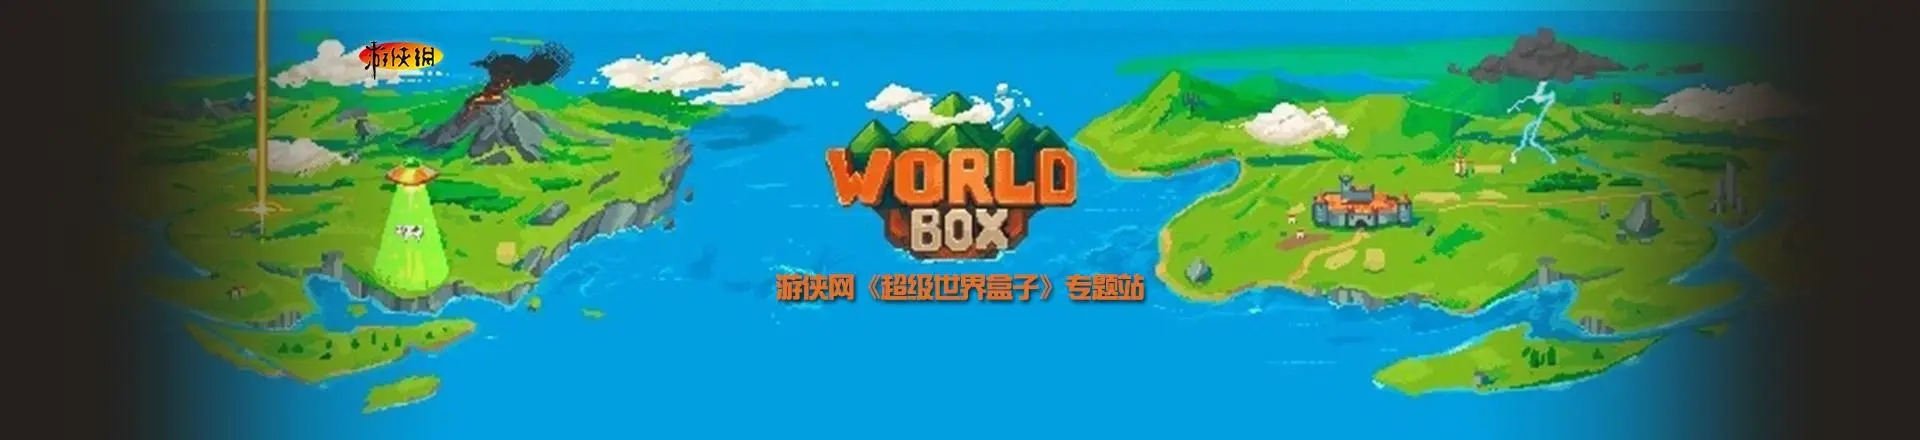 各版本世界盒子模拟游戏推荐